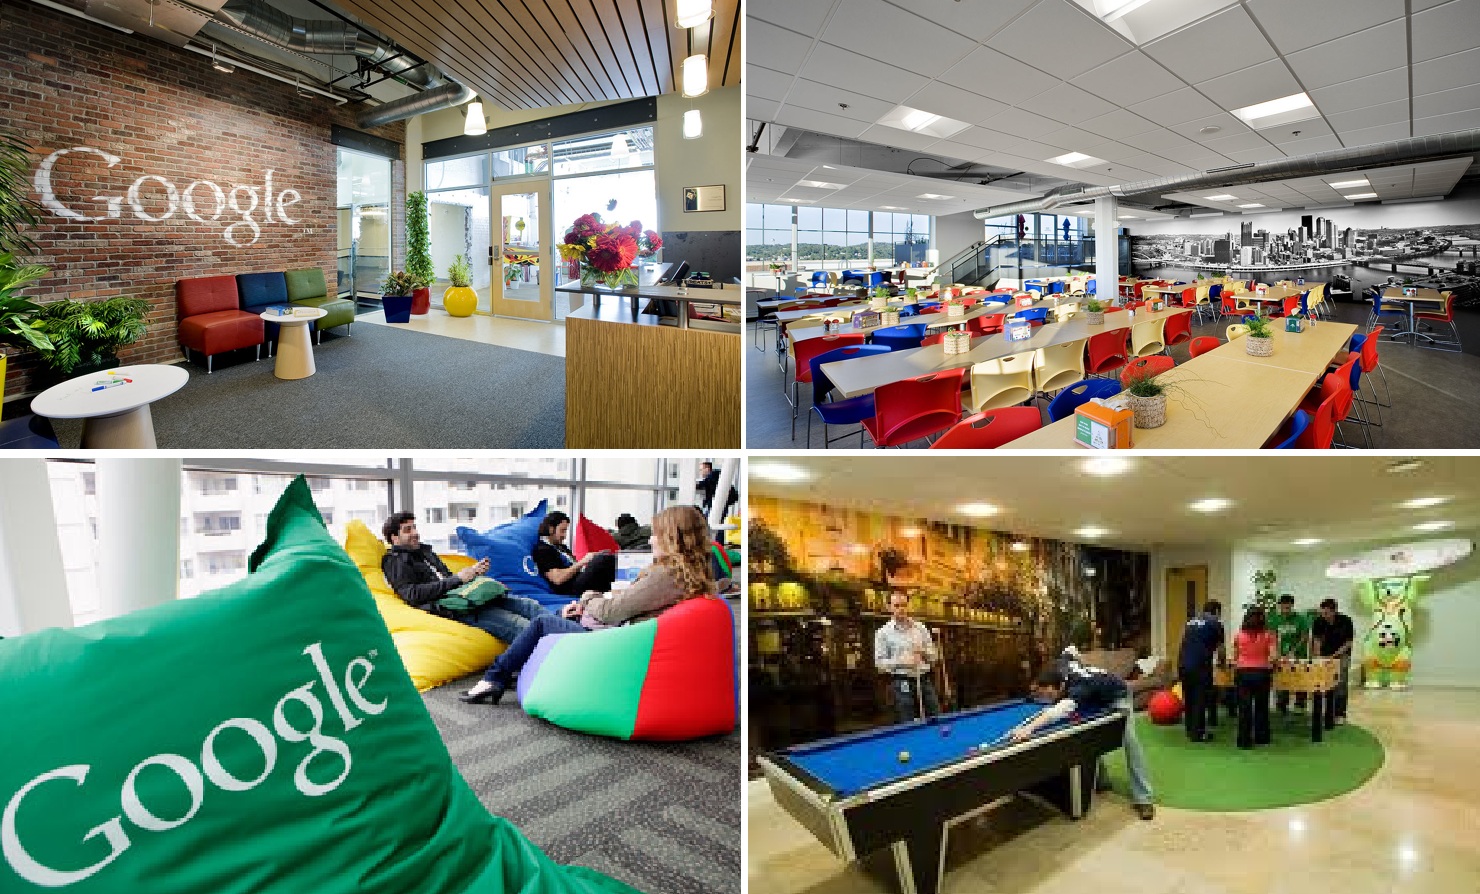 Google's corporate culture